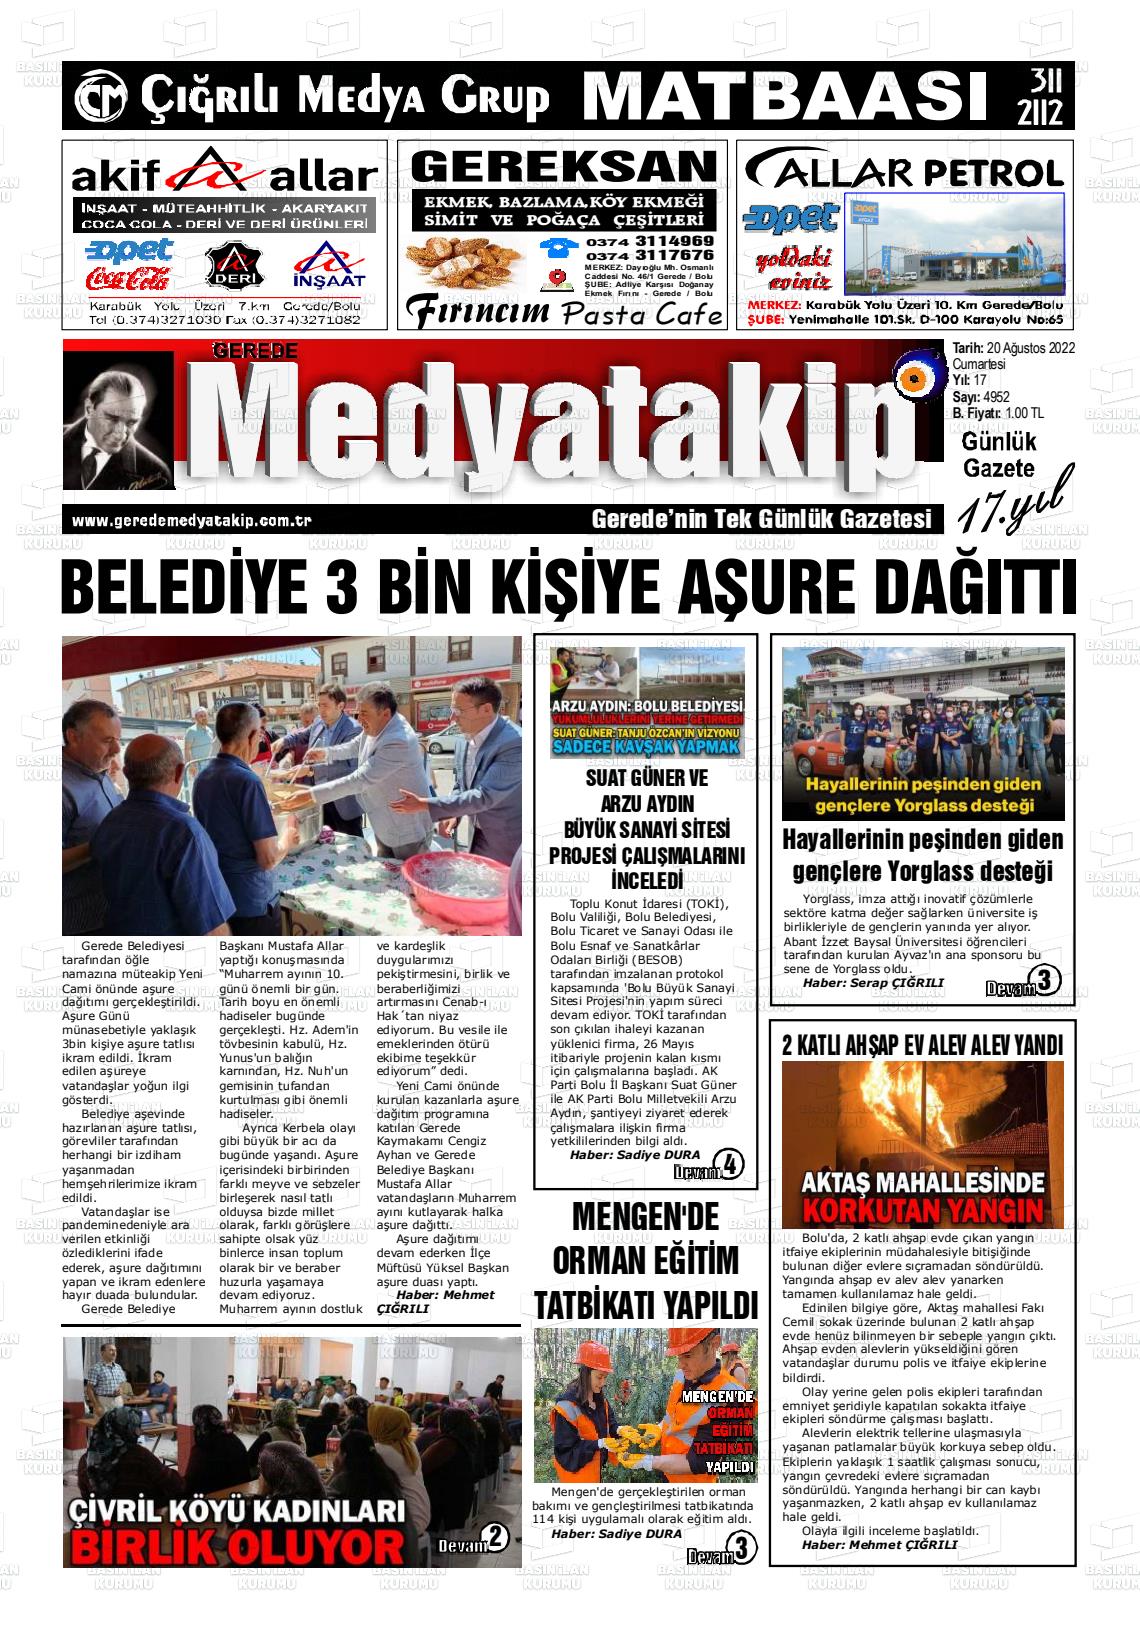 20 Ağustos 2022 Gerede Medya Takip Gazete Manşeti